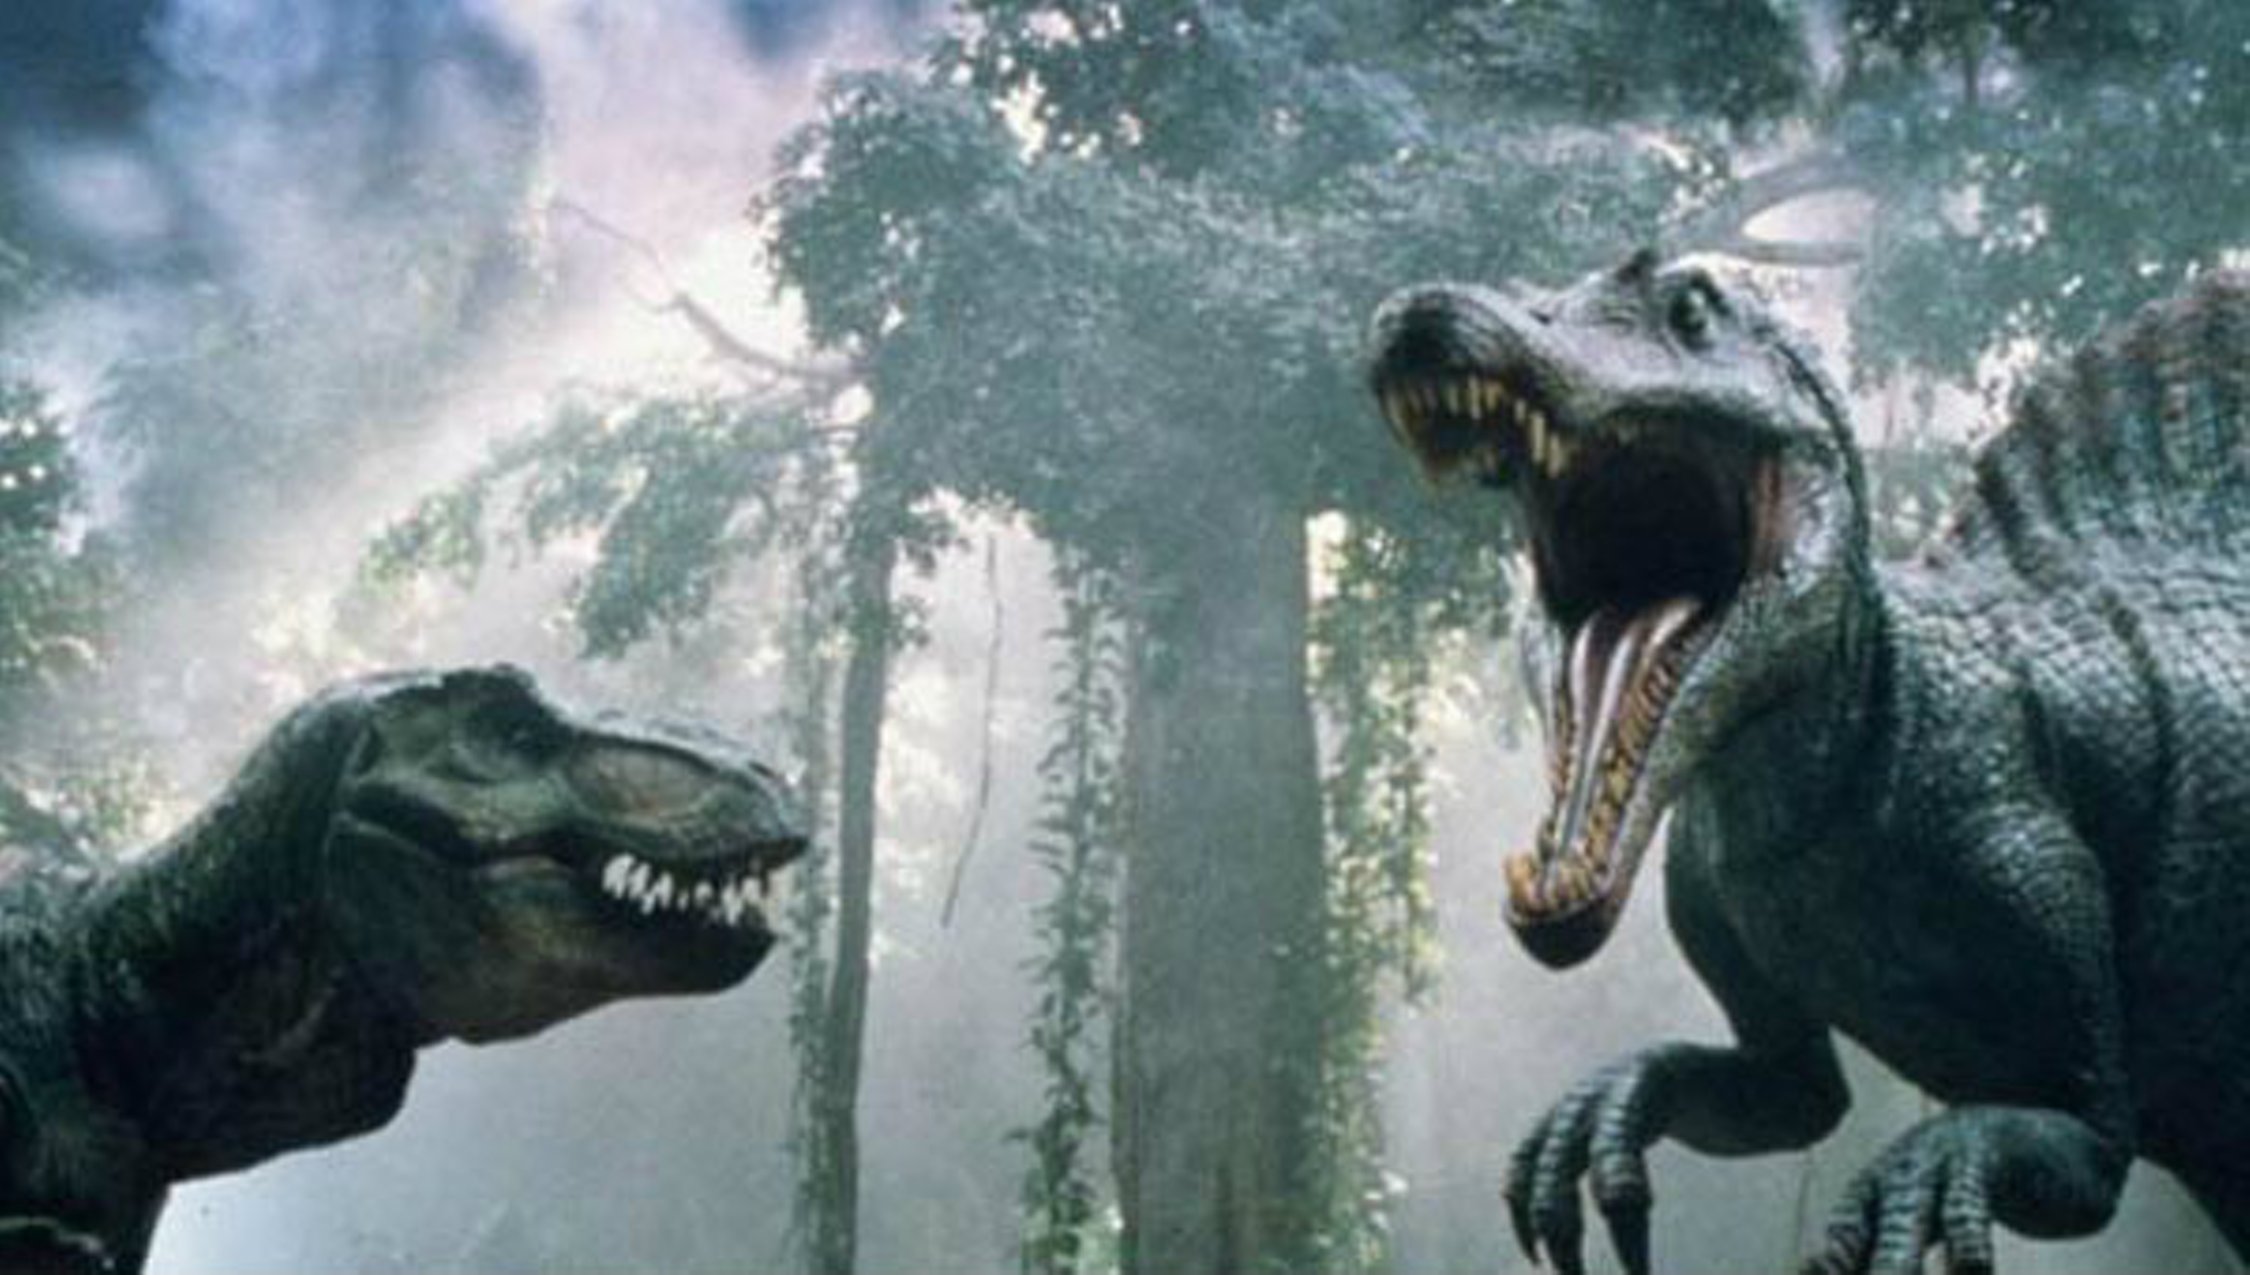 Тирекс спинозавр. Парк Юрского периода 3. Спинозавр Jurassic Park 3. Тираннозавр против Спинозавра парк Юрского периода 3. Парк Юрского периода 3 Тираннозавр vs Спинозавр.